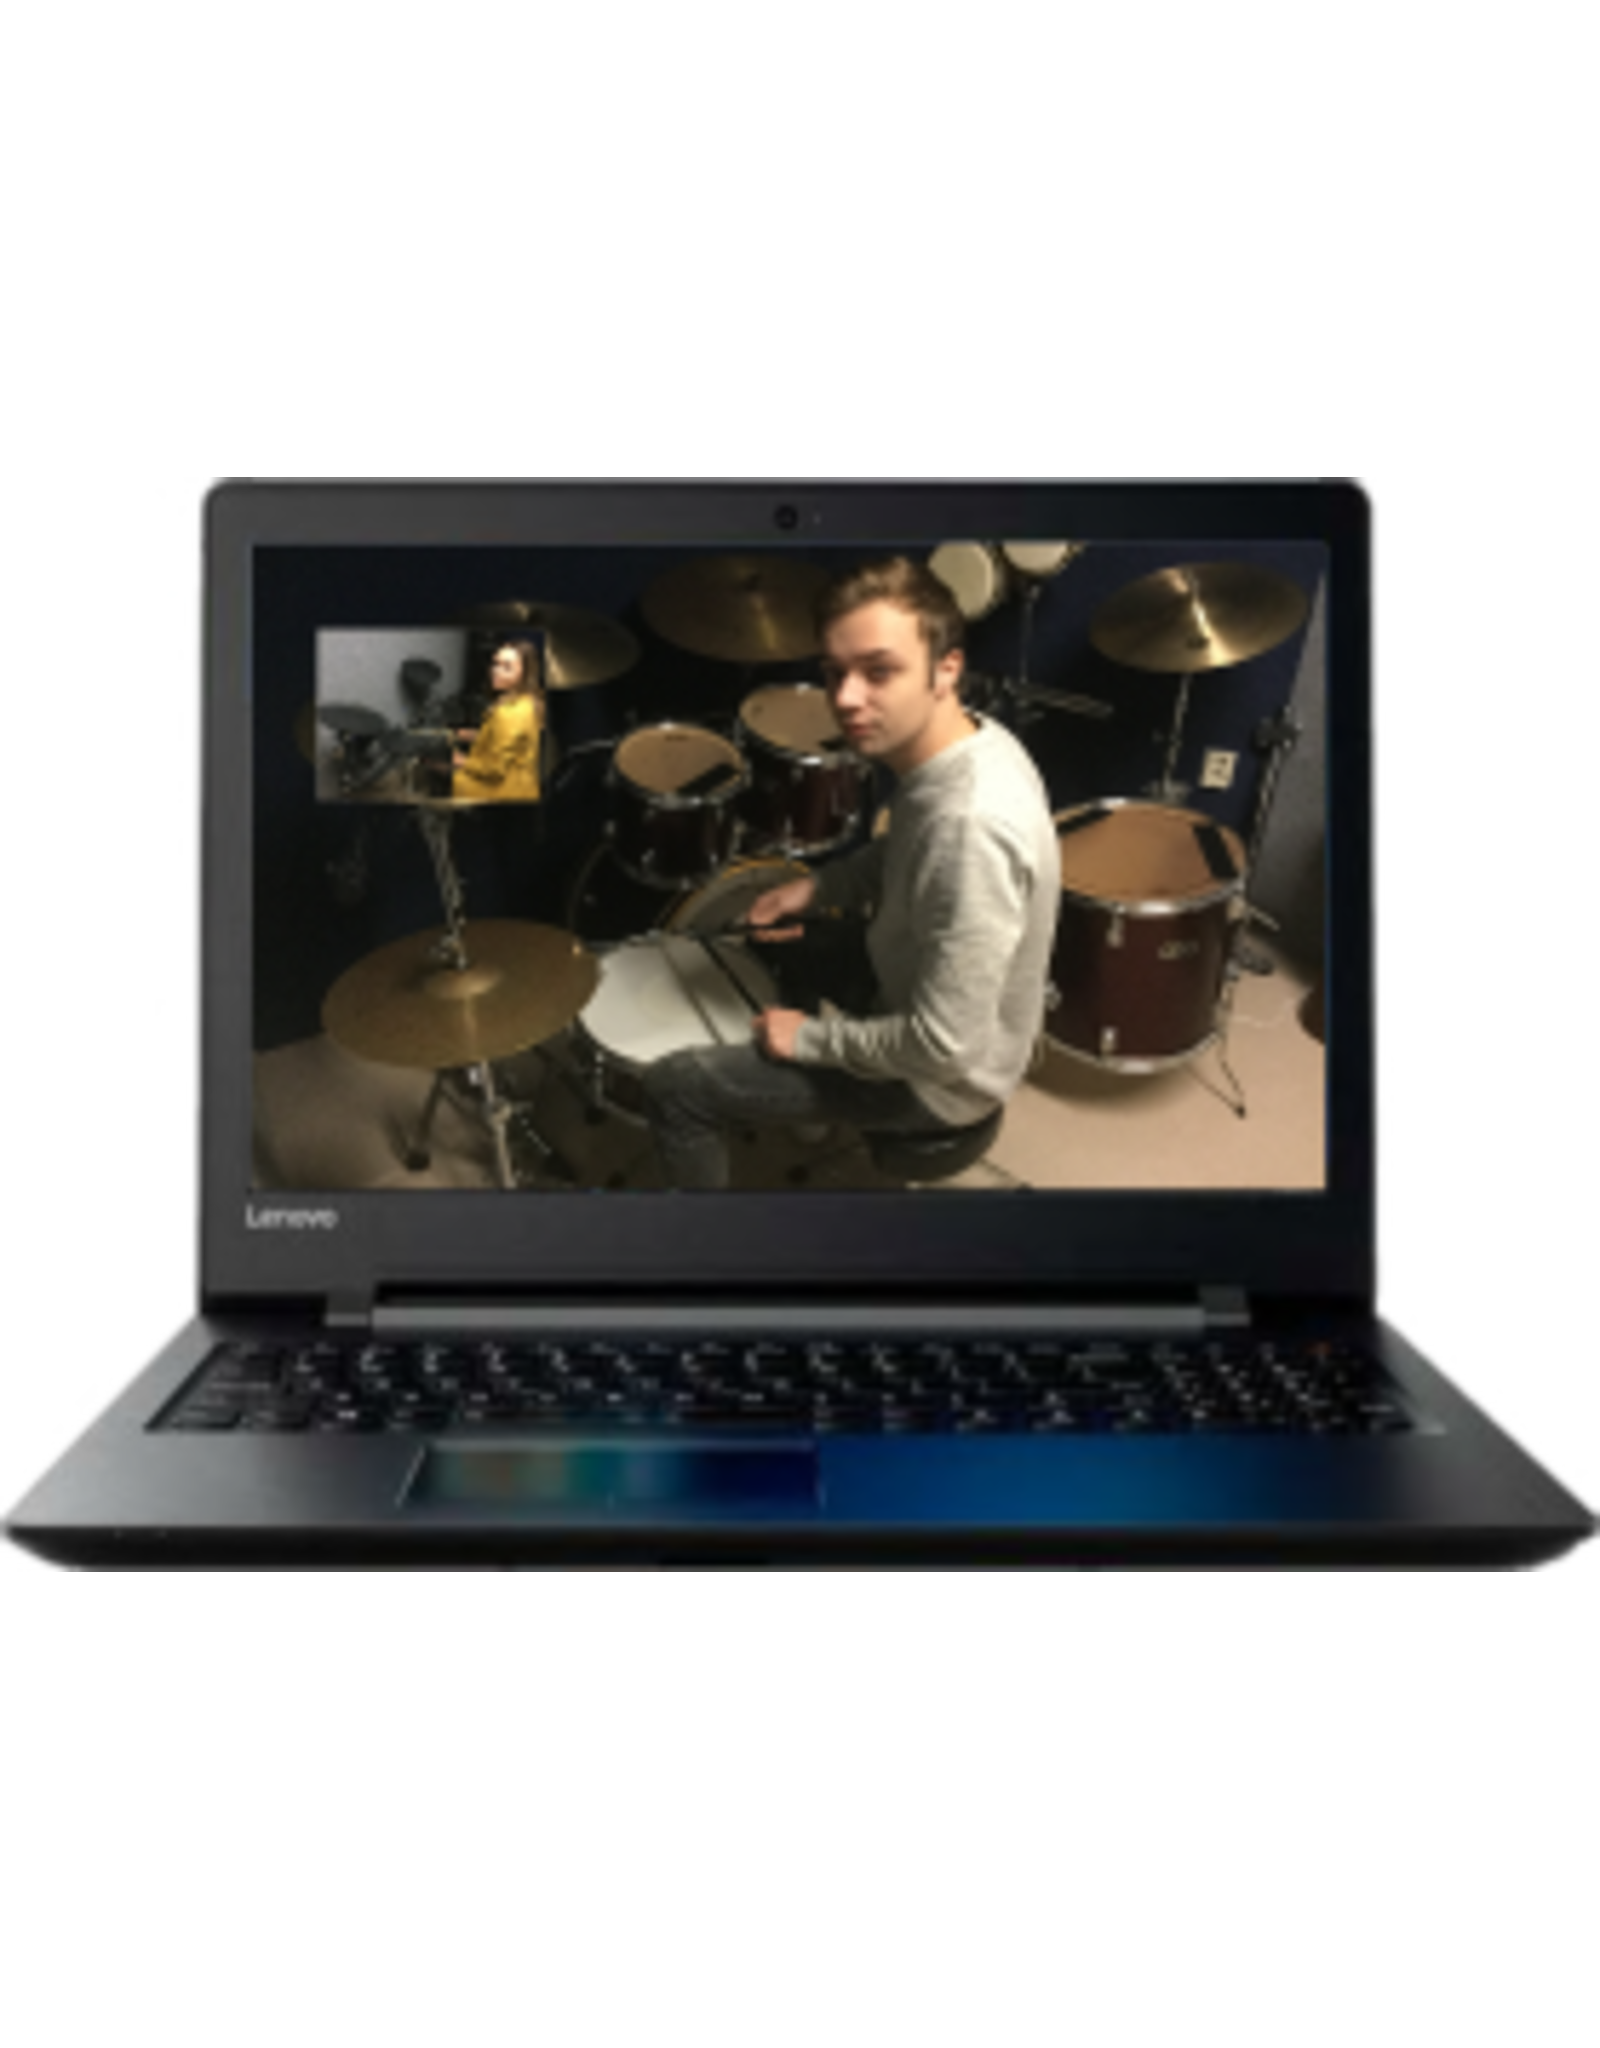 Online Muziekopleiding Drumlessen boven de 21 jaar Online Muziekopleiding